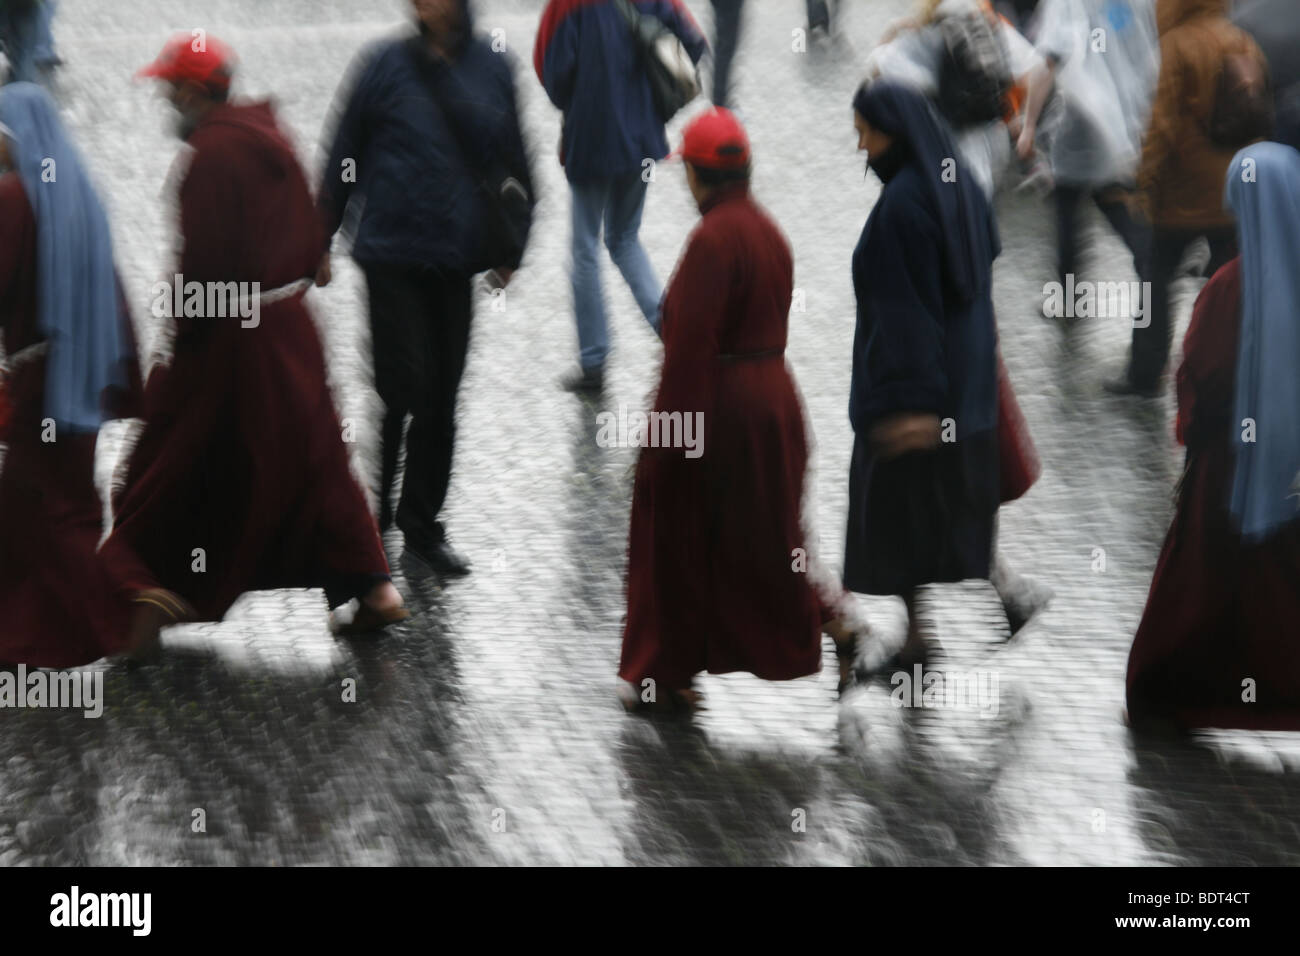 Nonnen und Mönche bei starkem Regen in St. Peters Platz Rom Stockfoto